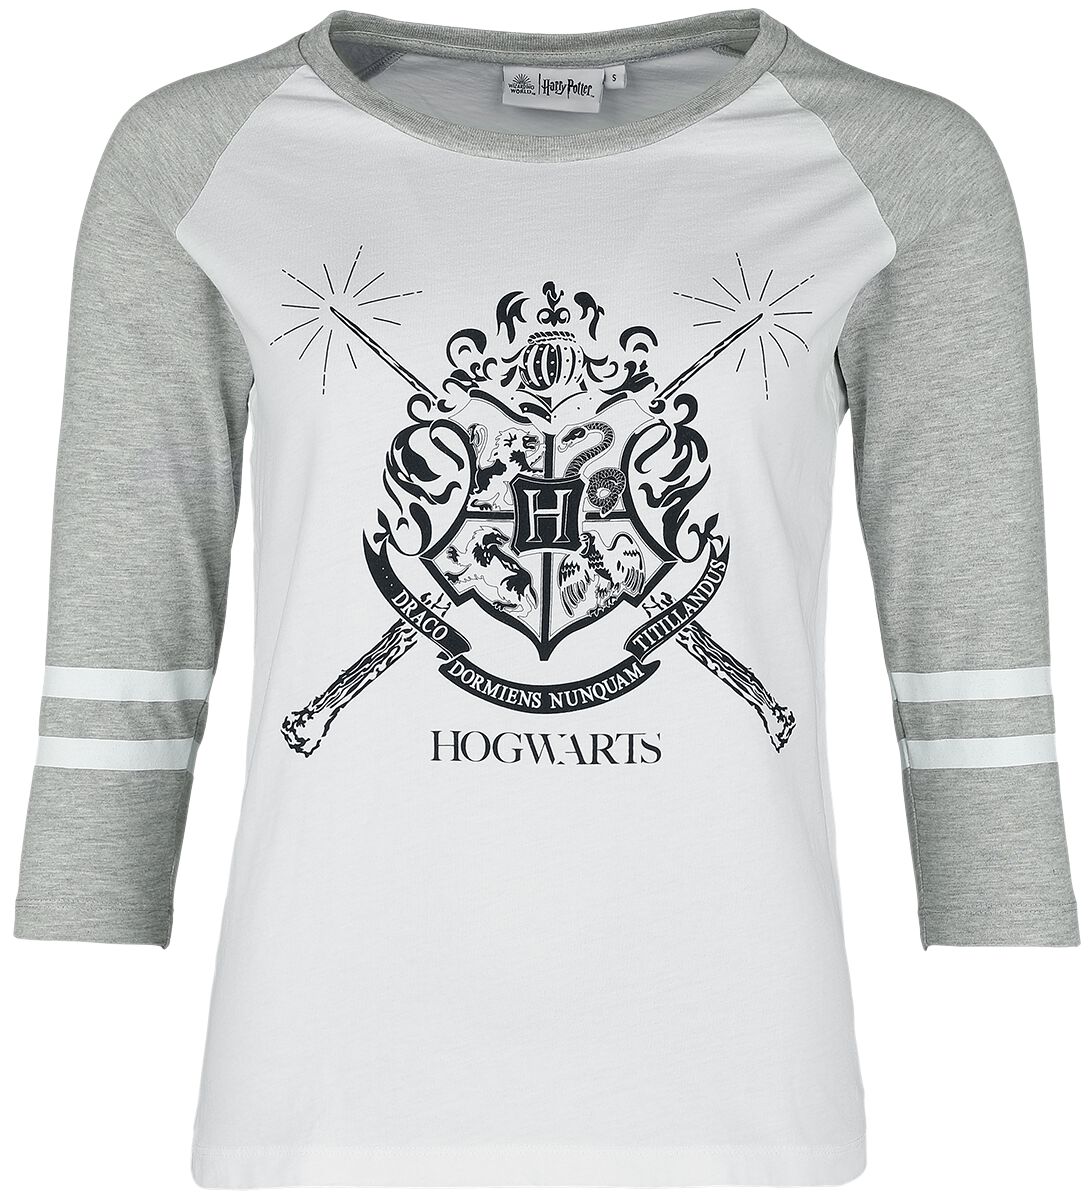 T-Shirt Manches courtes de Harry Potter - Poudlard - S à XXL - pour Femme - blanc/gris